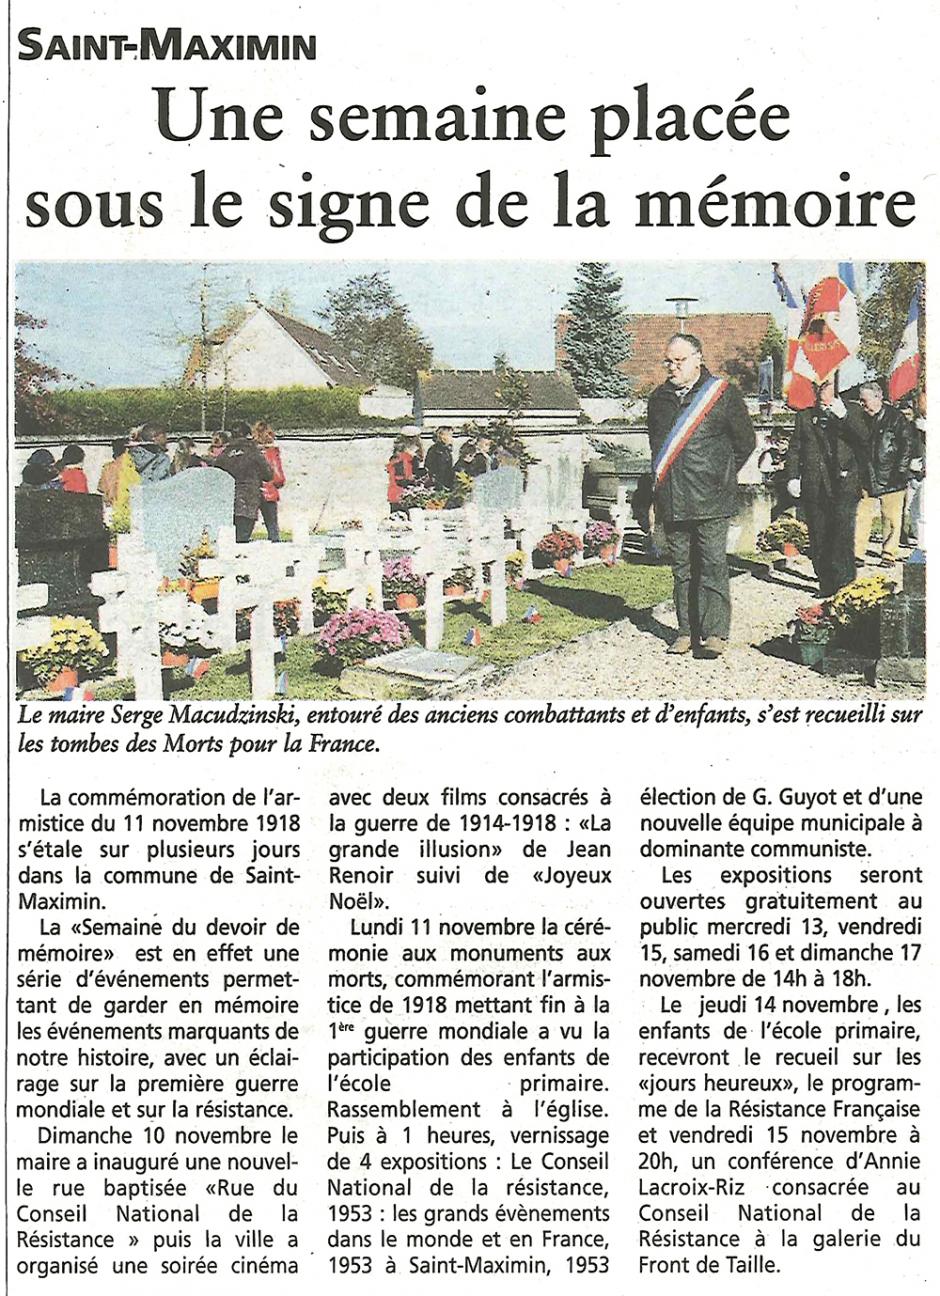 20131113-OH-Saint-Maximin-Une semaine placée sous le signe de la mémoire